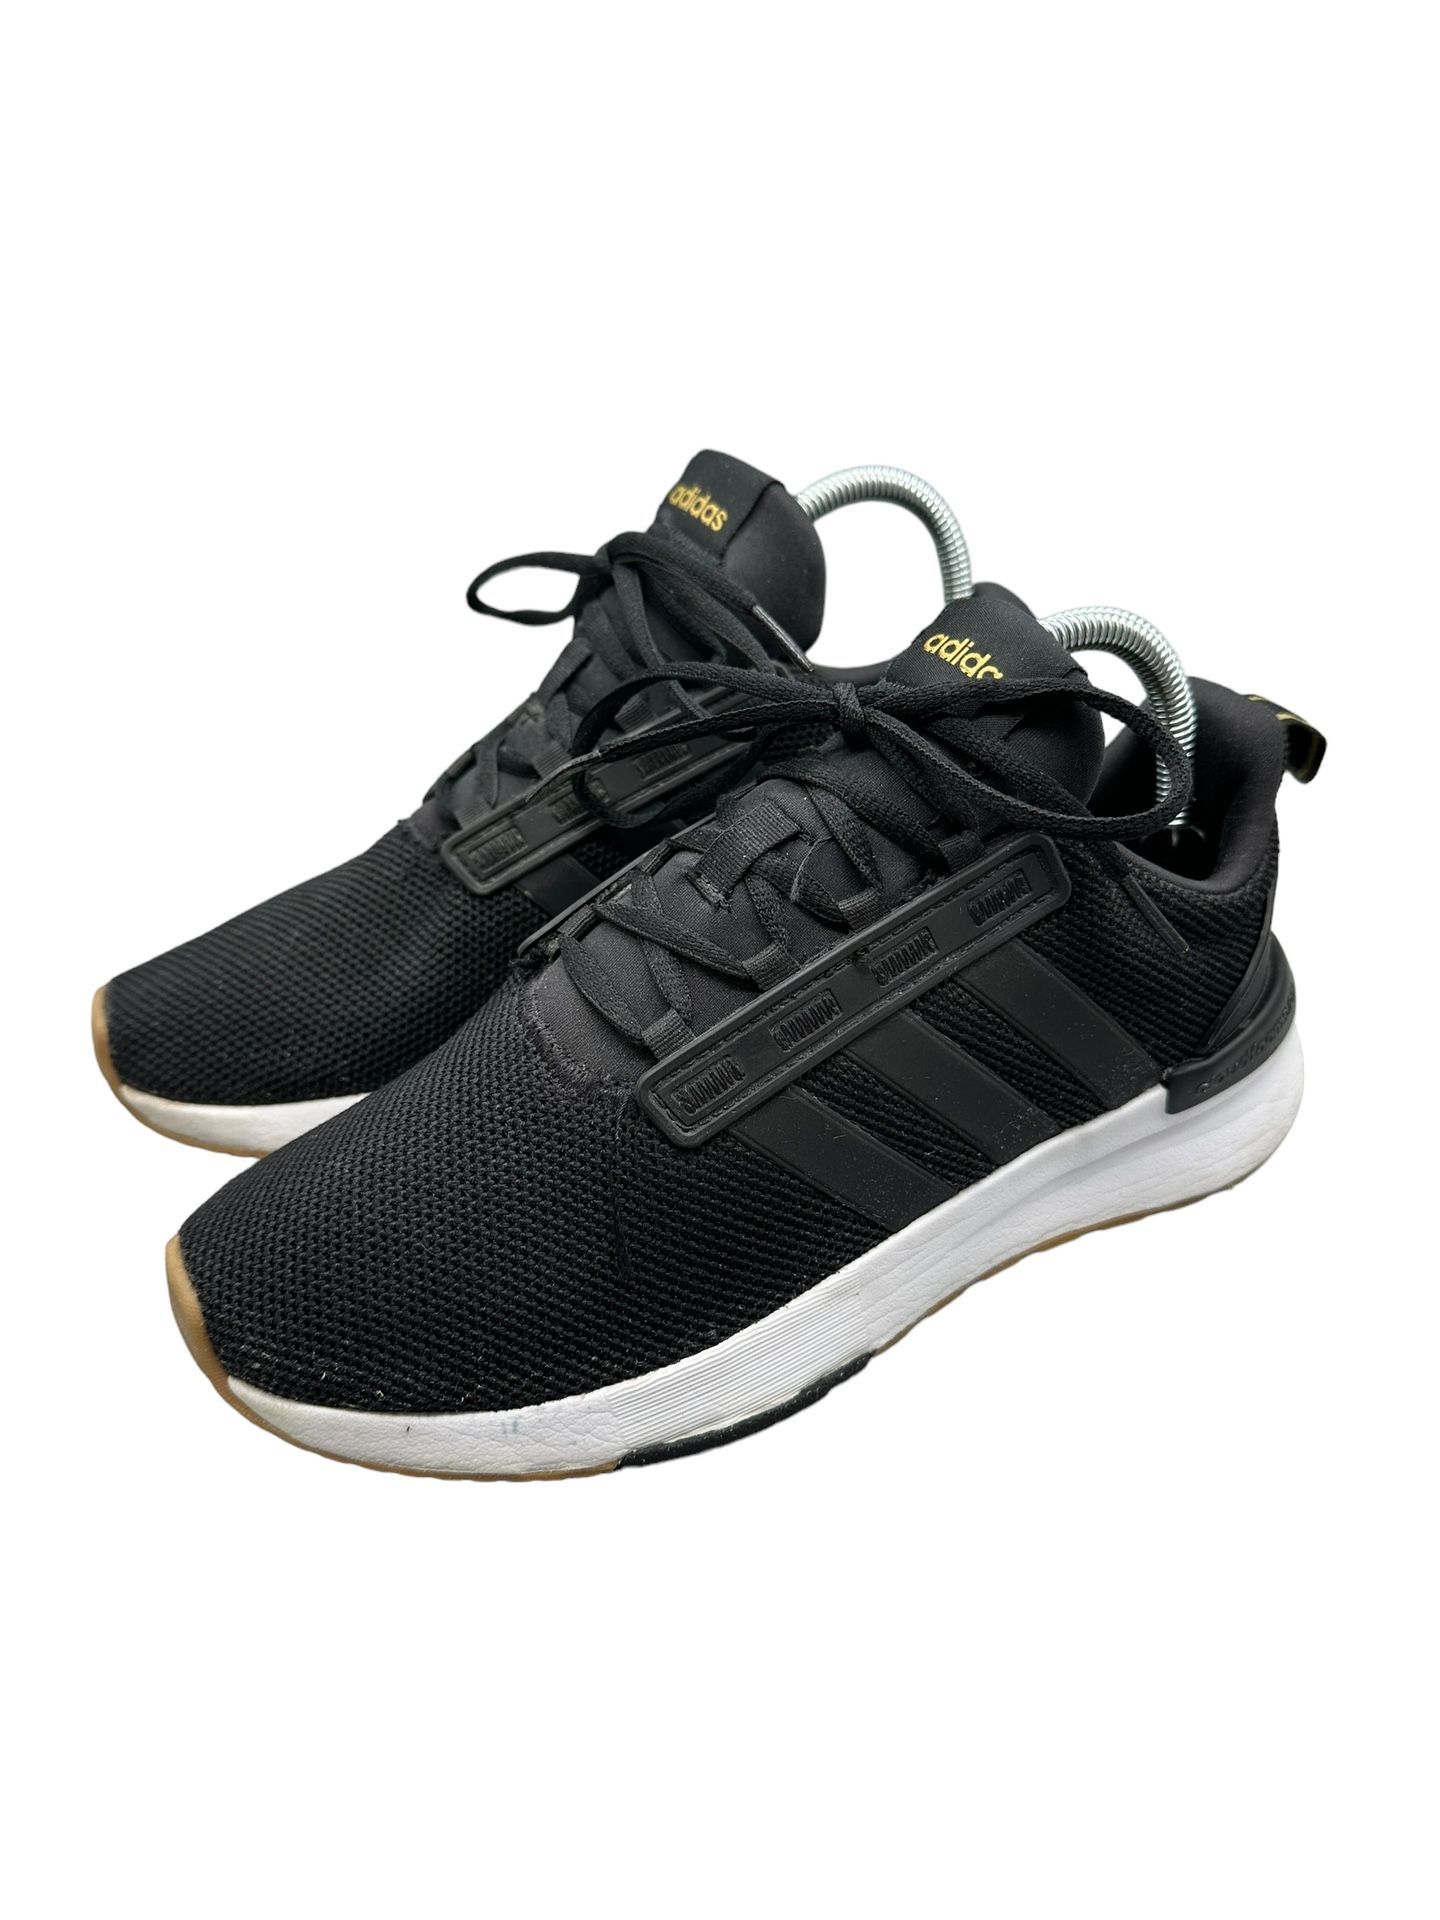 Adidas Women’s Black On Black Cloud Foam Comfort Sneakers Size 8